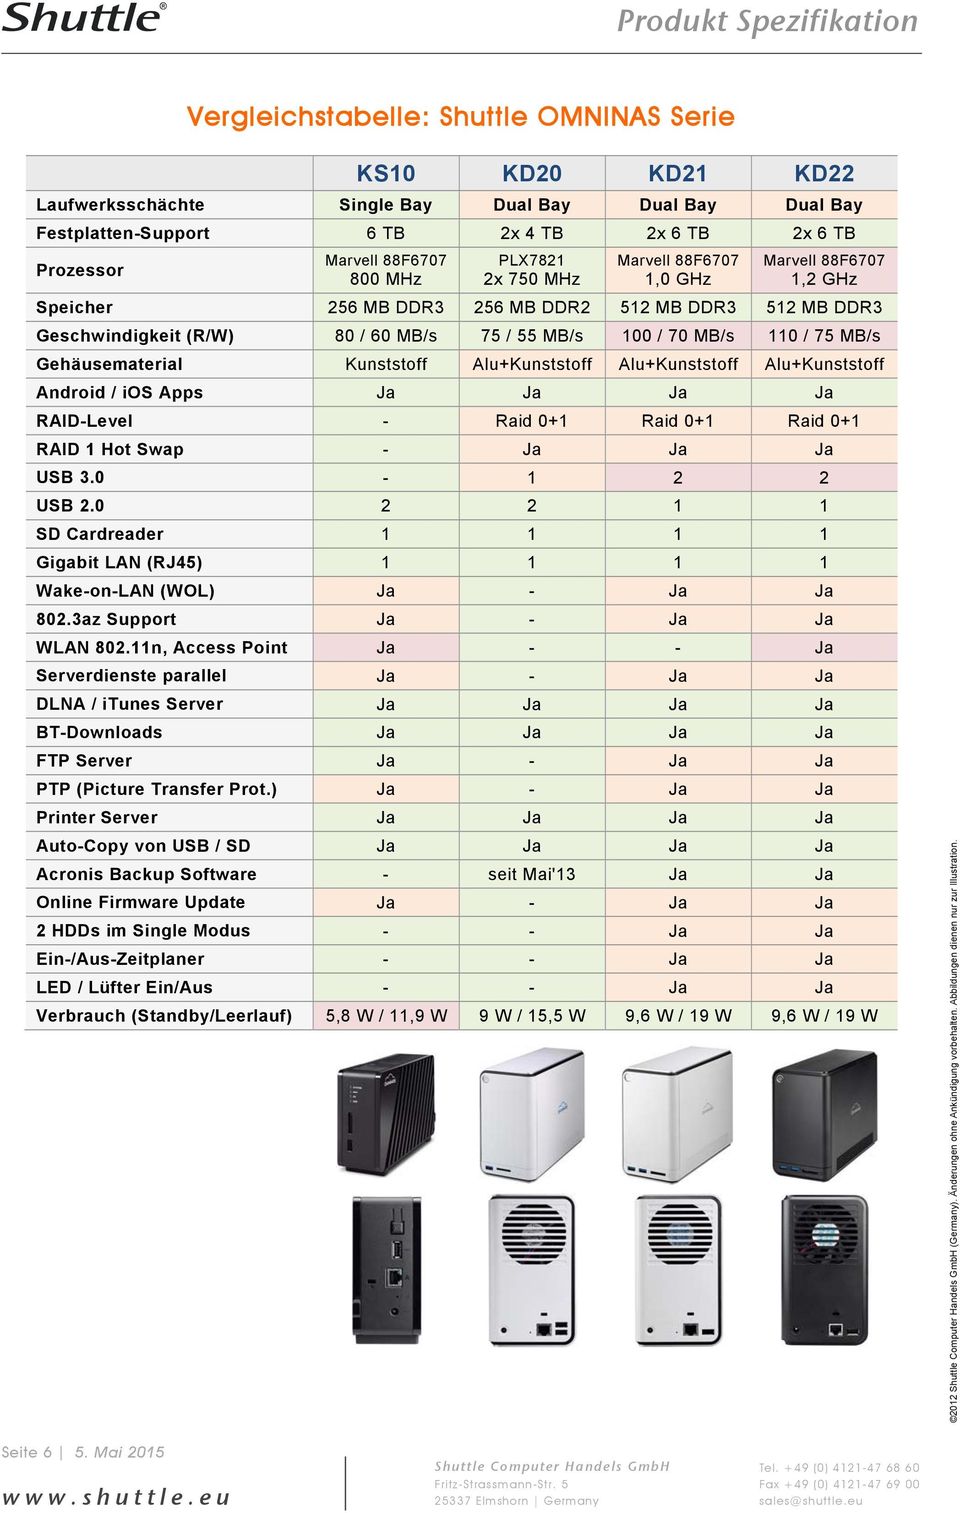 Gehäusematerial Kunststoff Alu+Kunststoff Alu+Kunststoff Alu+Kunststoff Android / ios Apps Ja Ja Ja Ja RAID-Level - Raid 0+1 Raid 0+1 Raid 0+1 RAID 1 Hot Swap - Ja Ja Ja USB 3.0-1 2 2 USB 2.